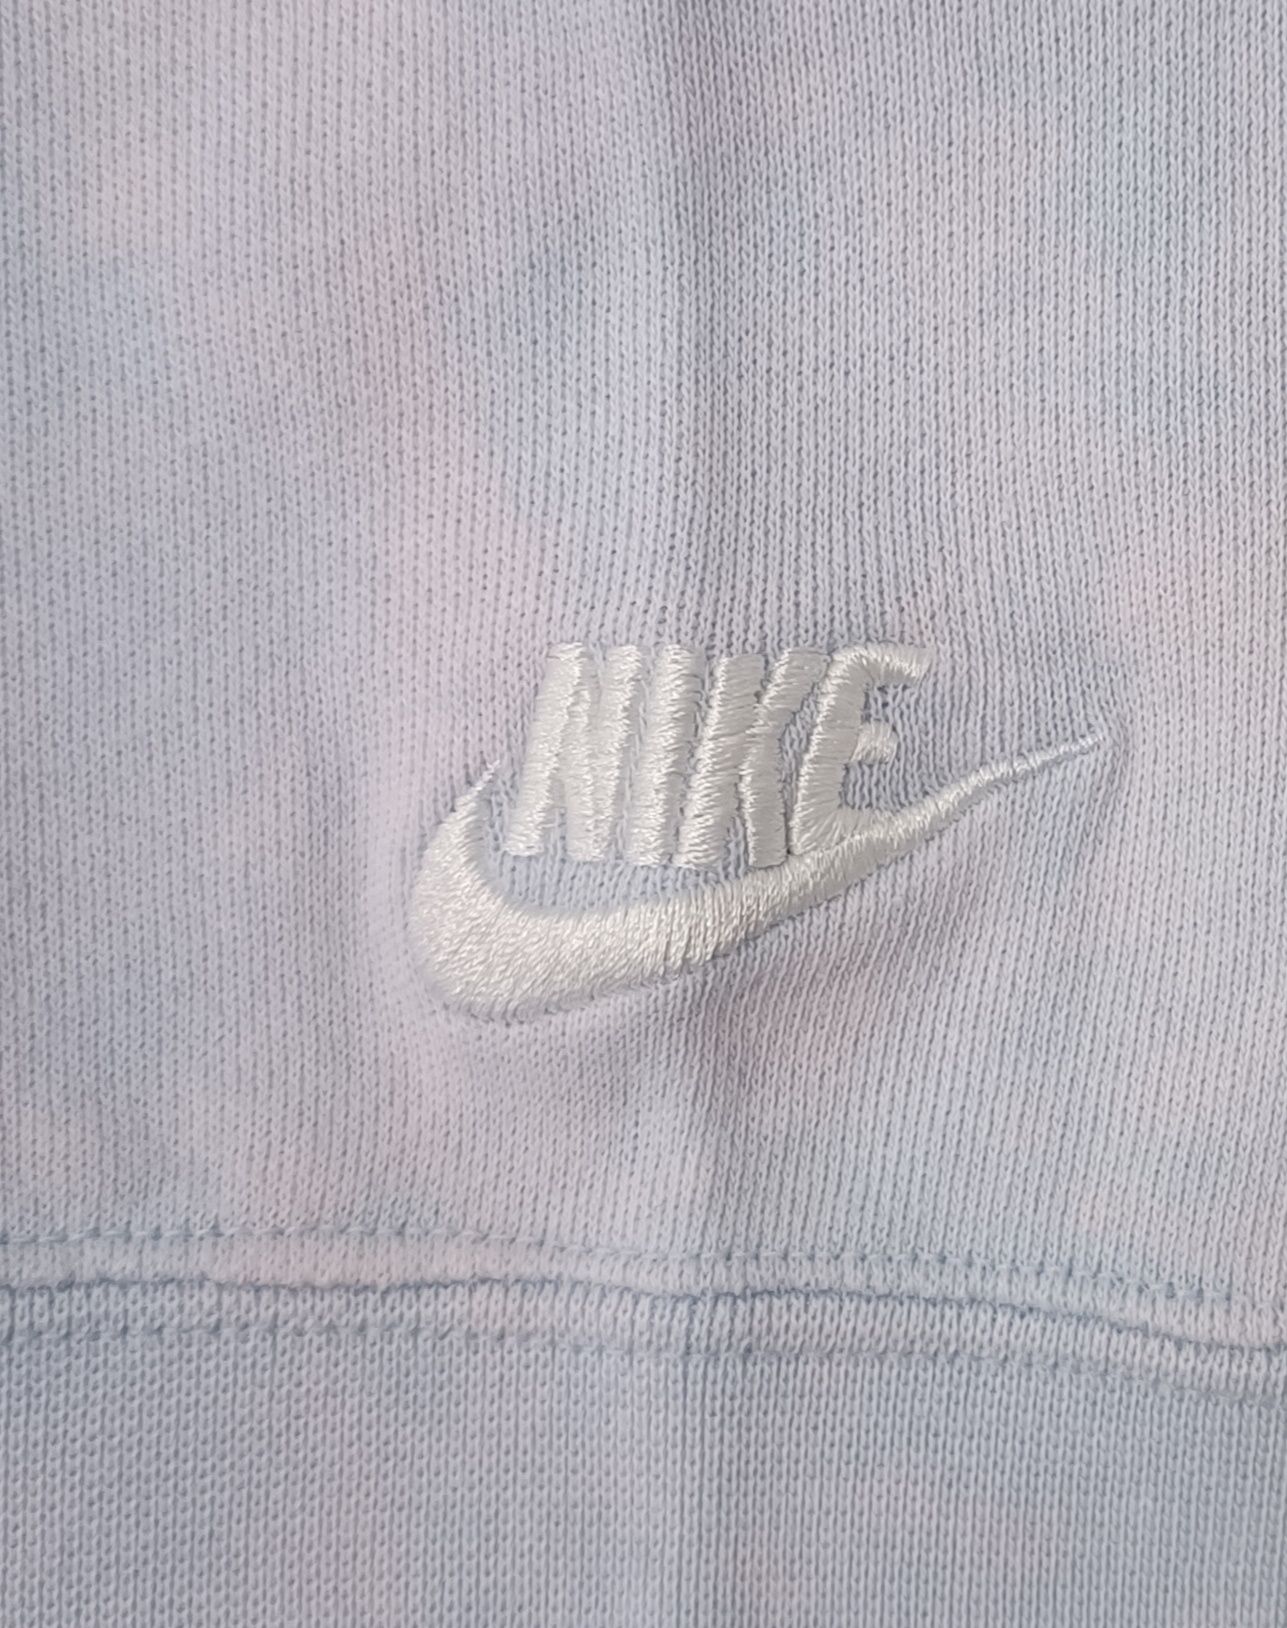 Nike NSW Wash Sweatshirt оригинално горнище M Найк памук суичър спорт